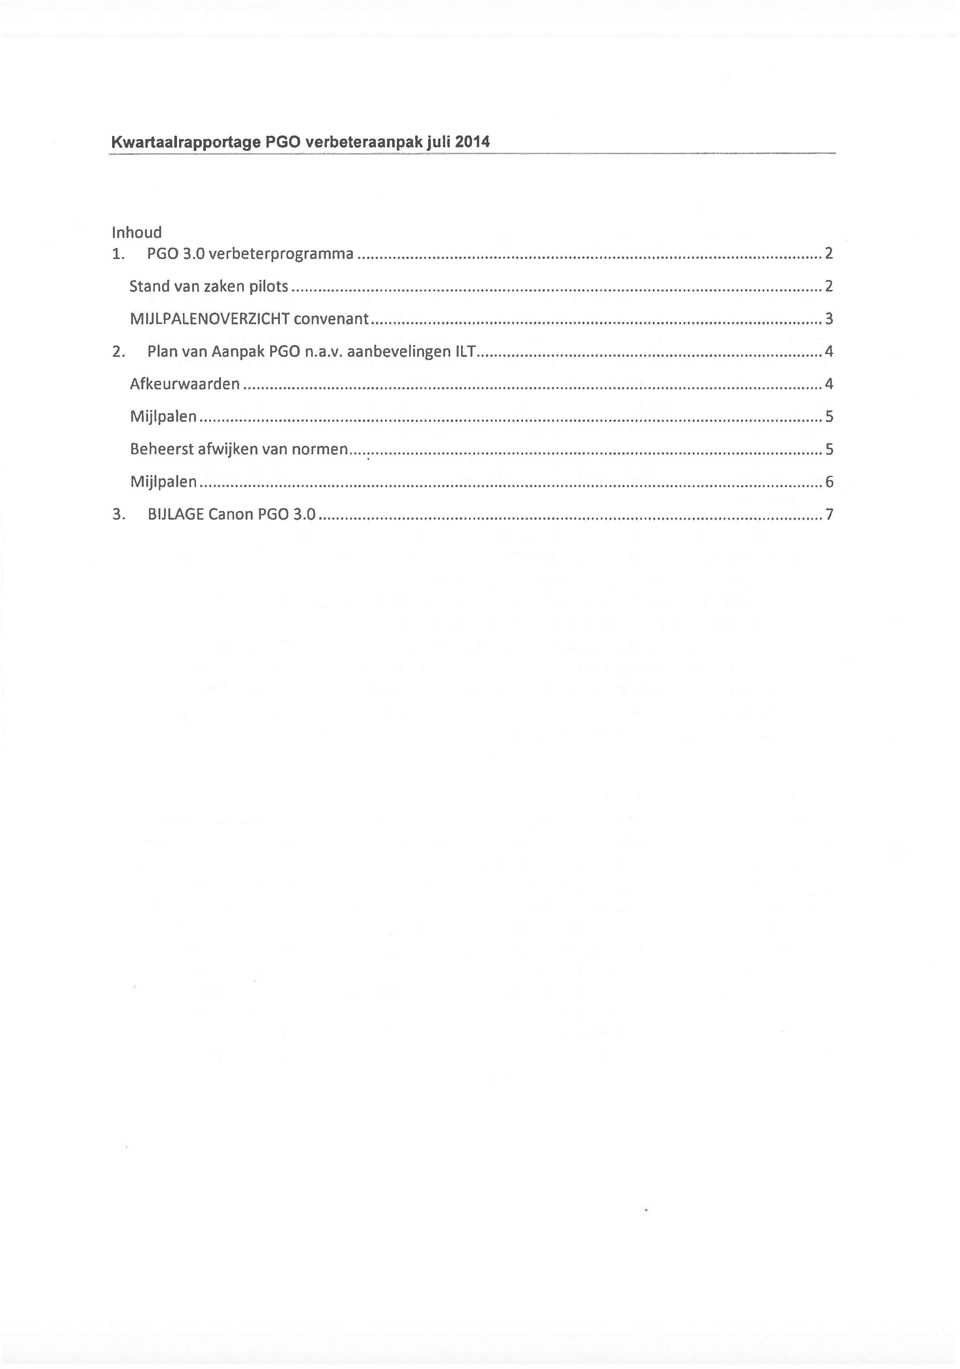 convenant 3 2. Plan van Aanpak PGO n.a.v. aanbevelingen ILT 4